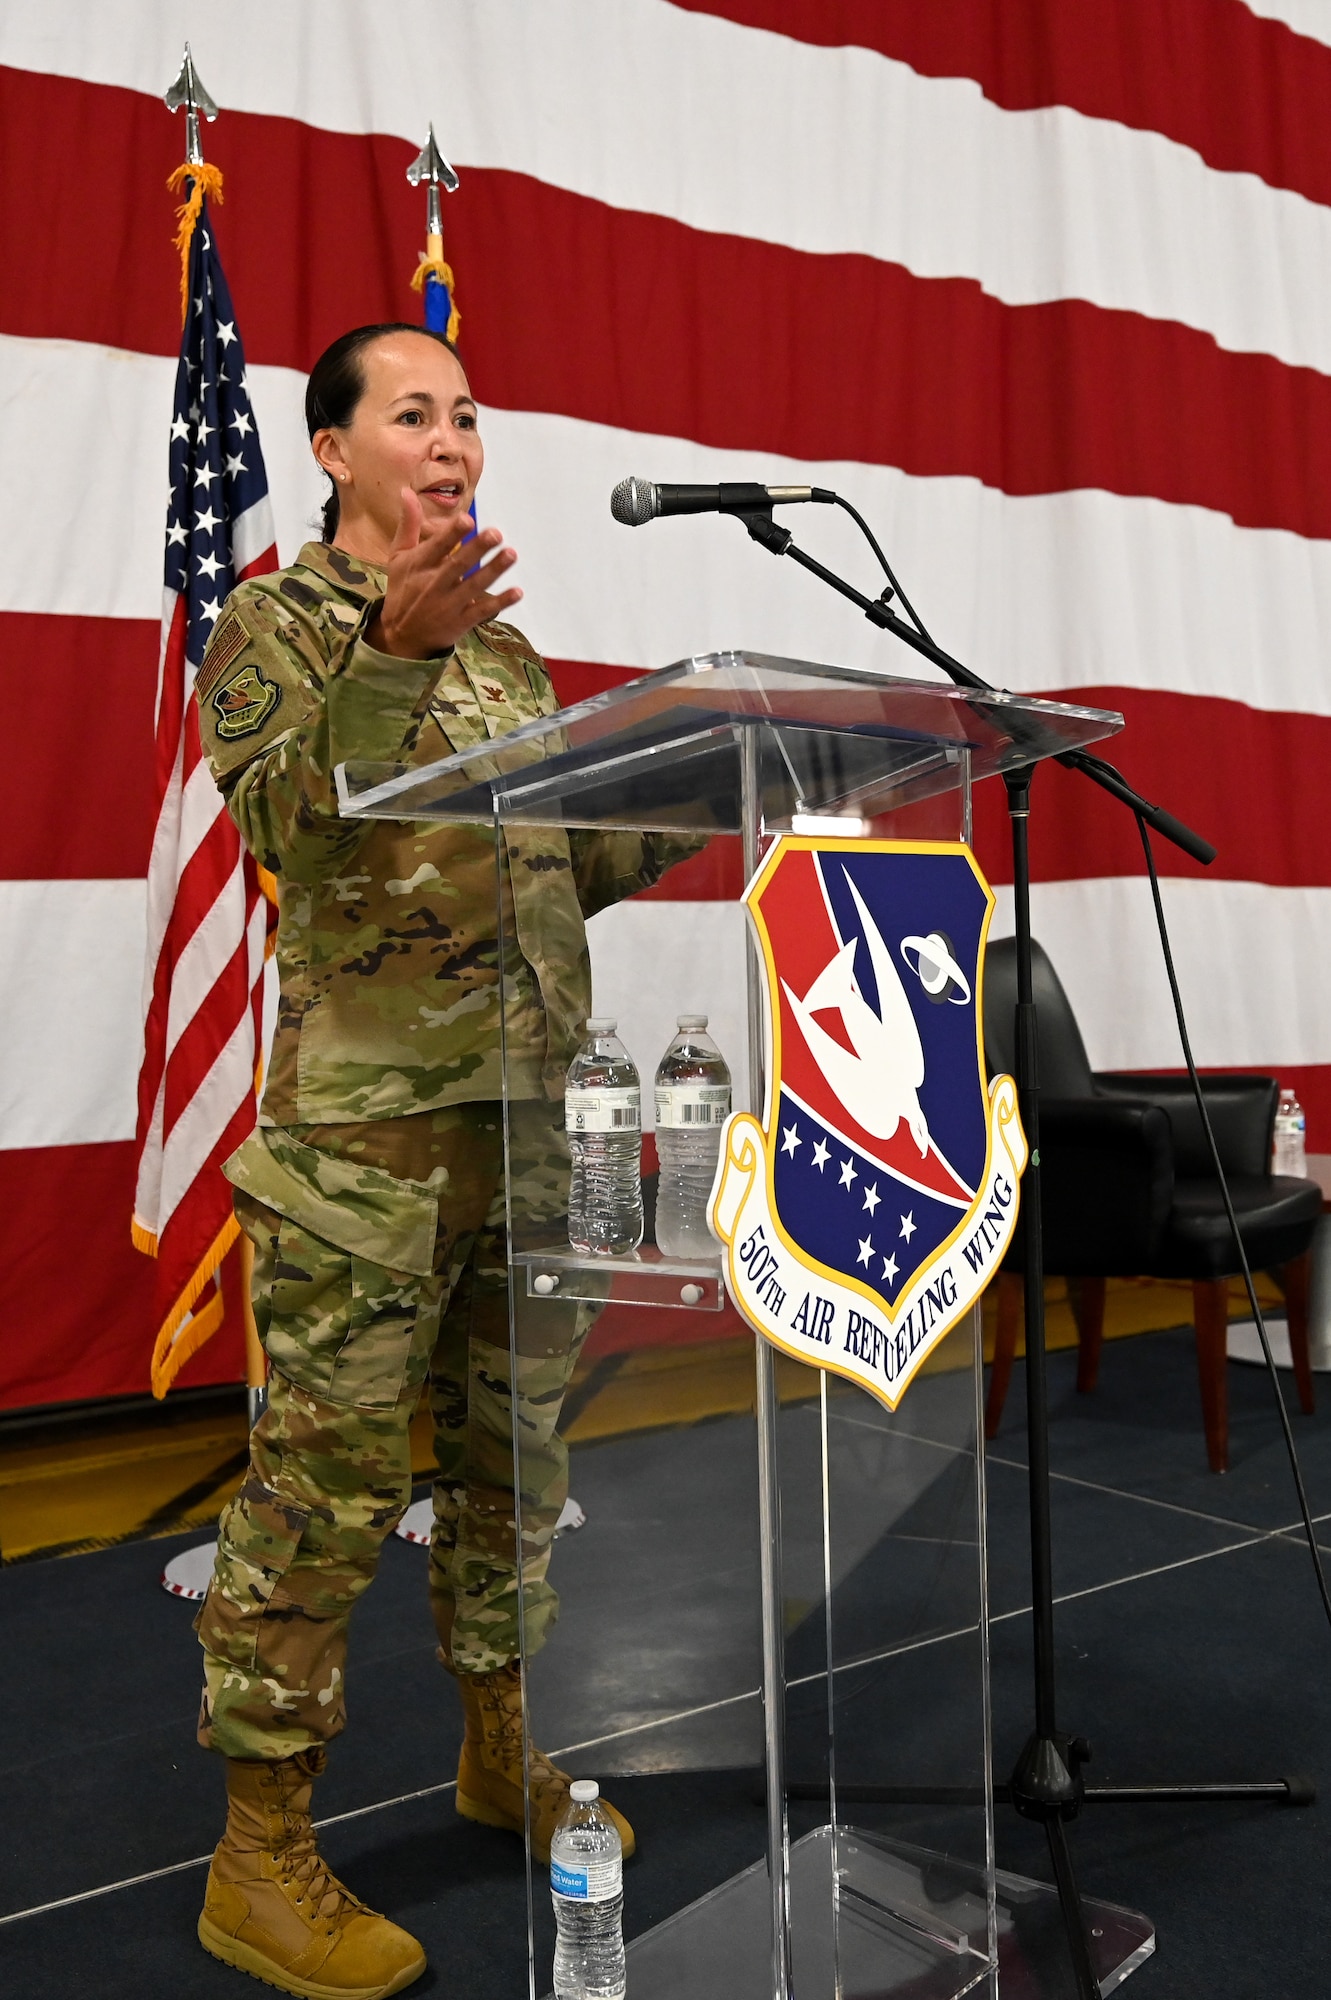 Commander at podium